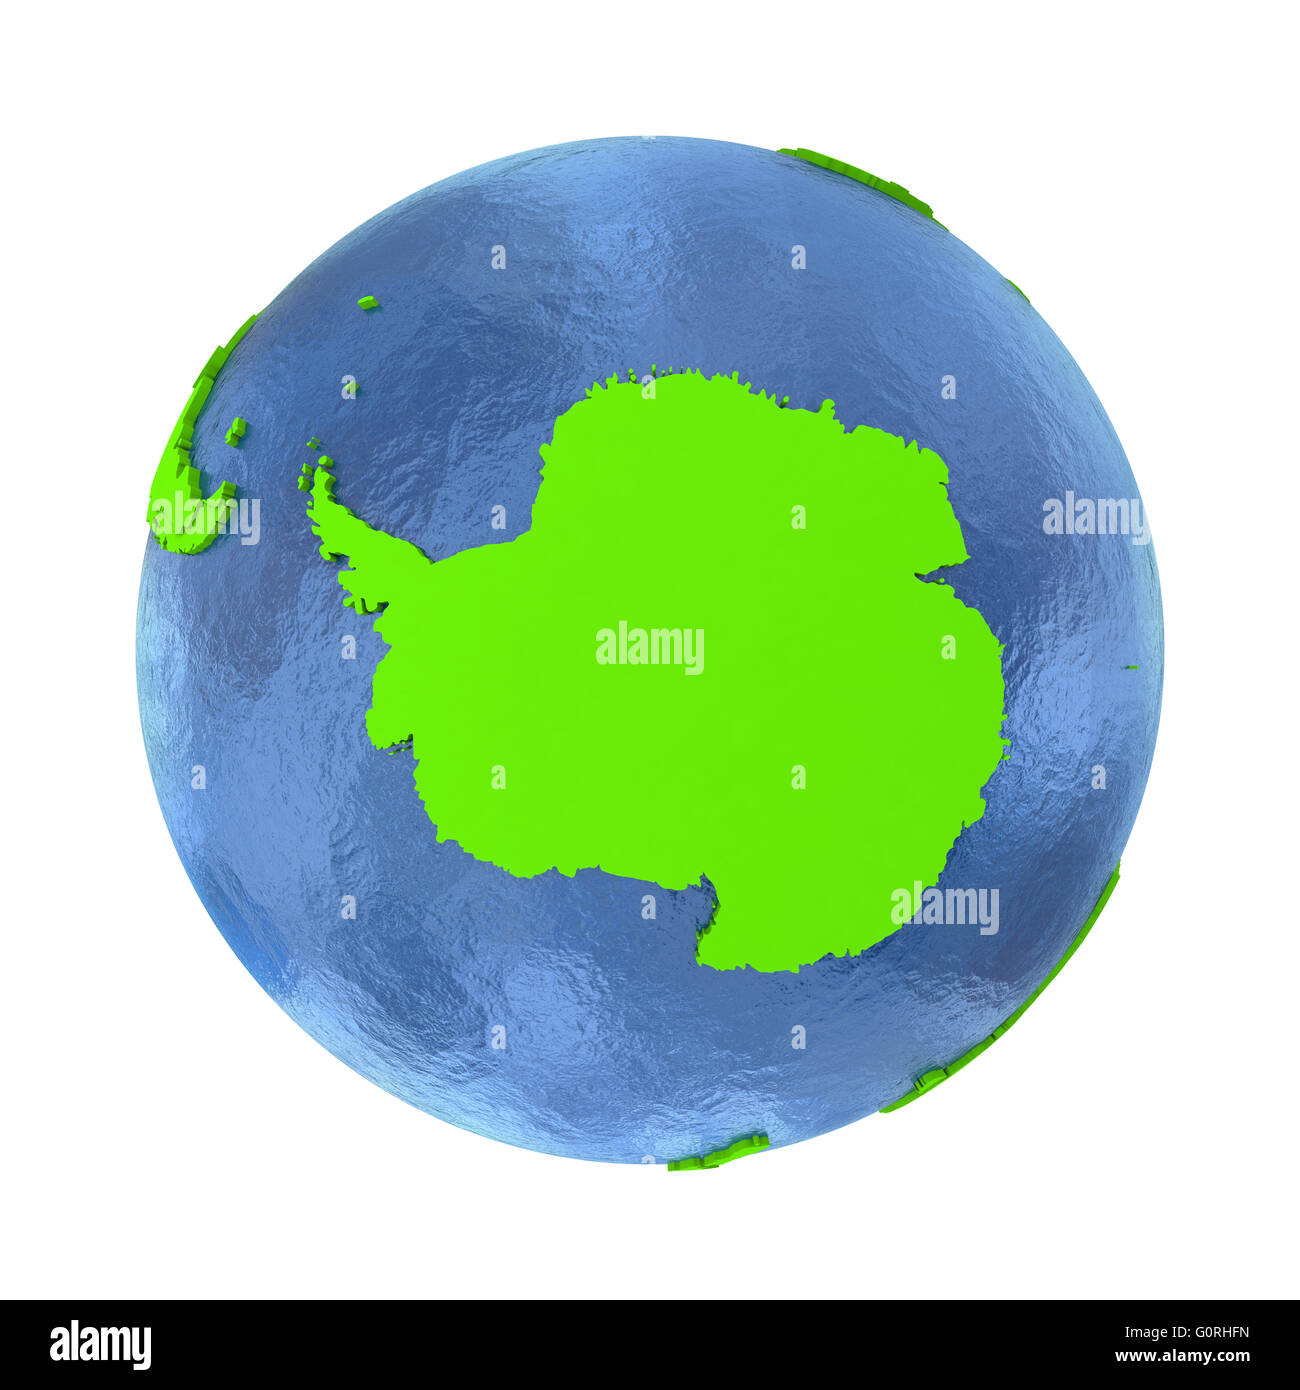 Sur l'Antarctique vert élégant modèle 3D de la planète Terre avec de l'eau réaliste de l'océan bleu et vert avec des pays continents visibles Banque D'Images